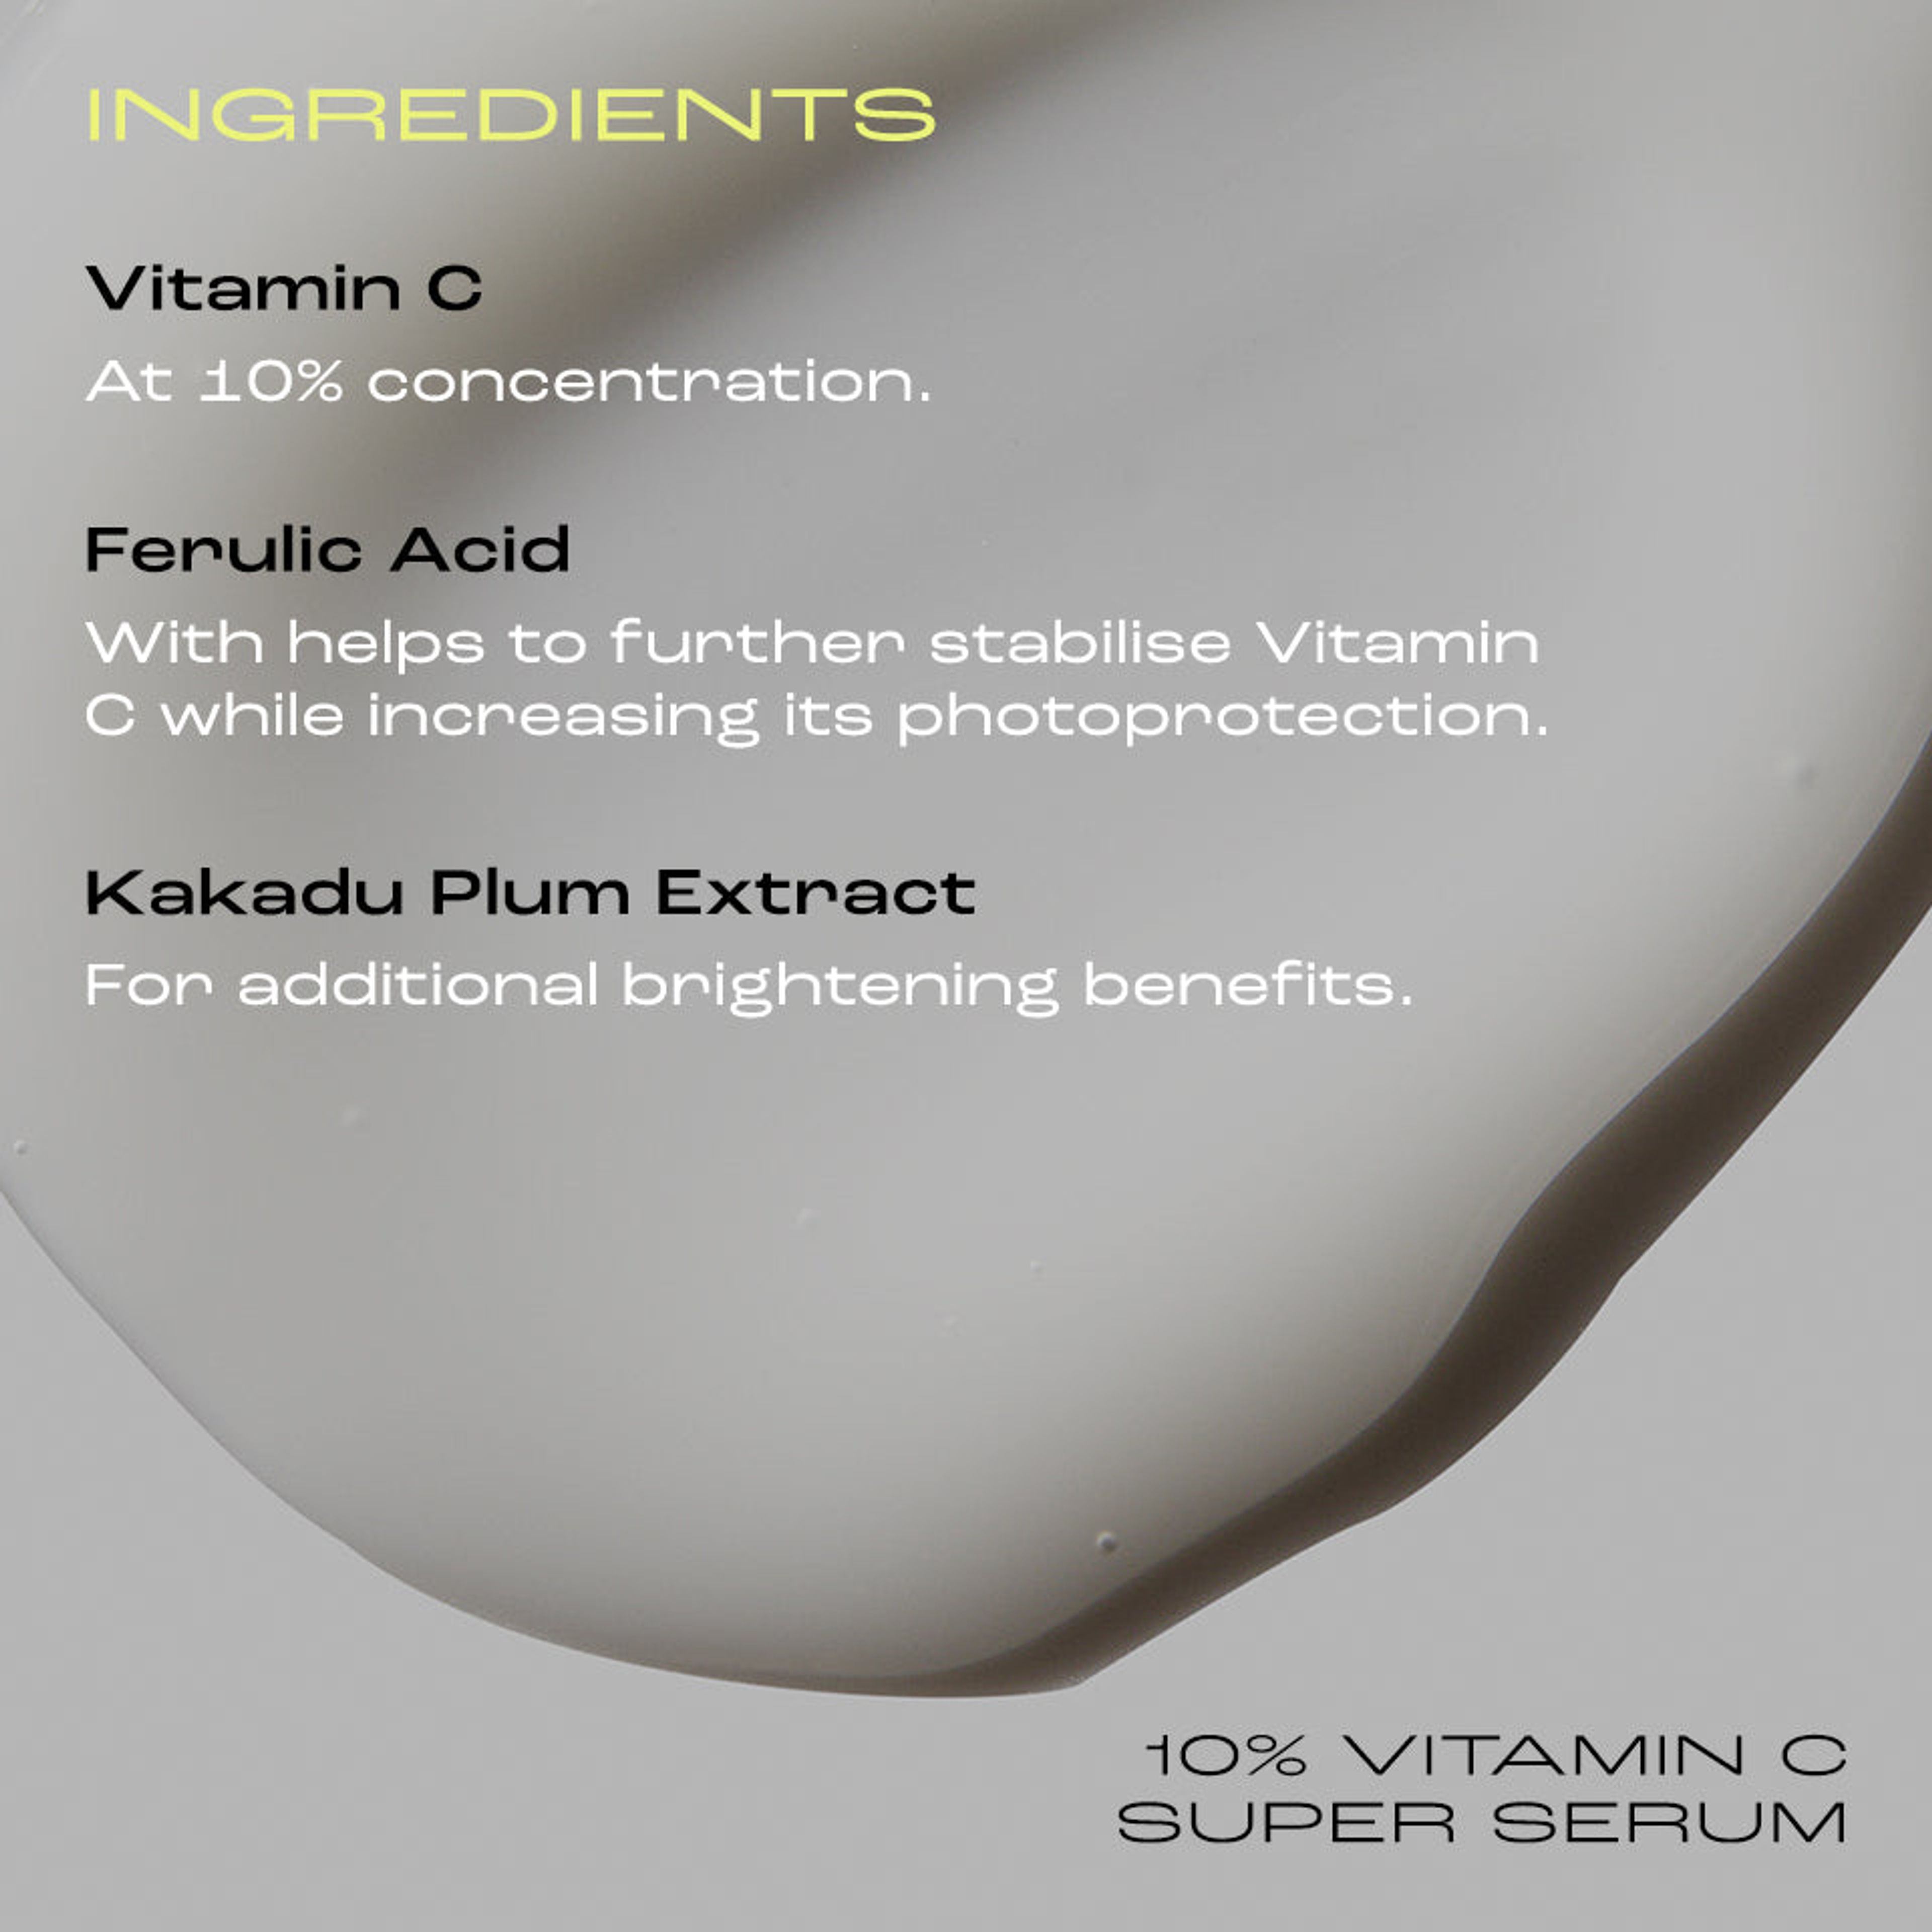 10% Vitamin C Super Serum